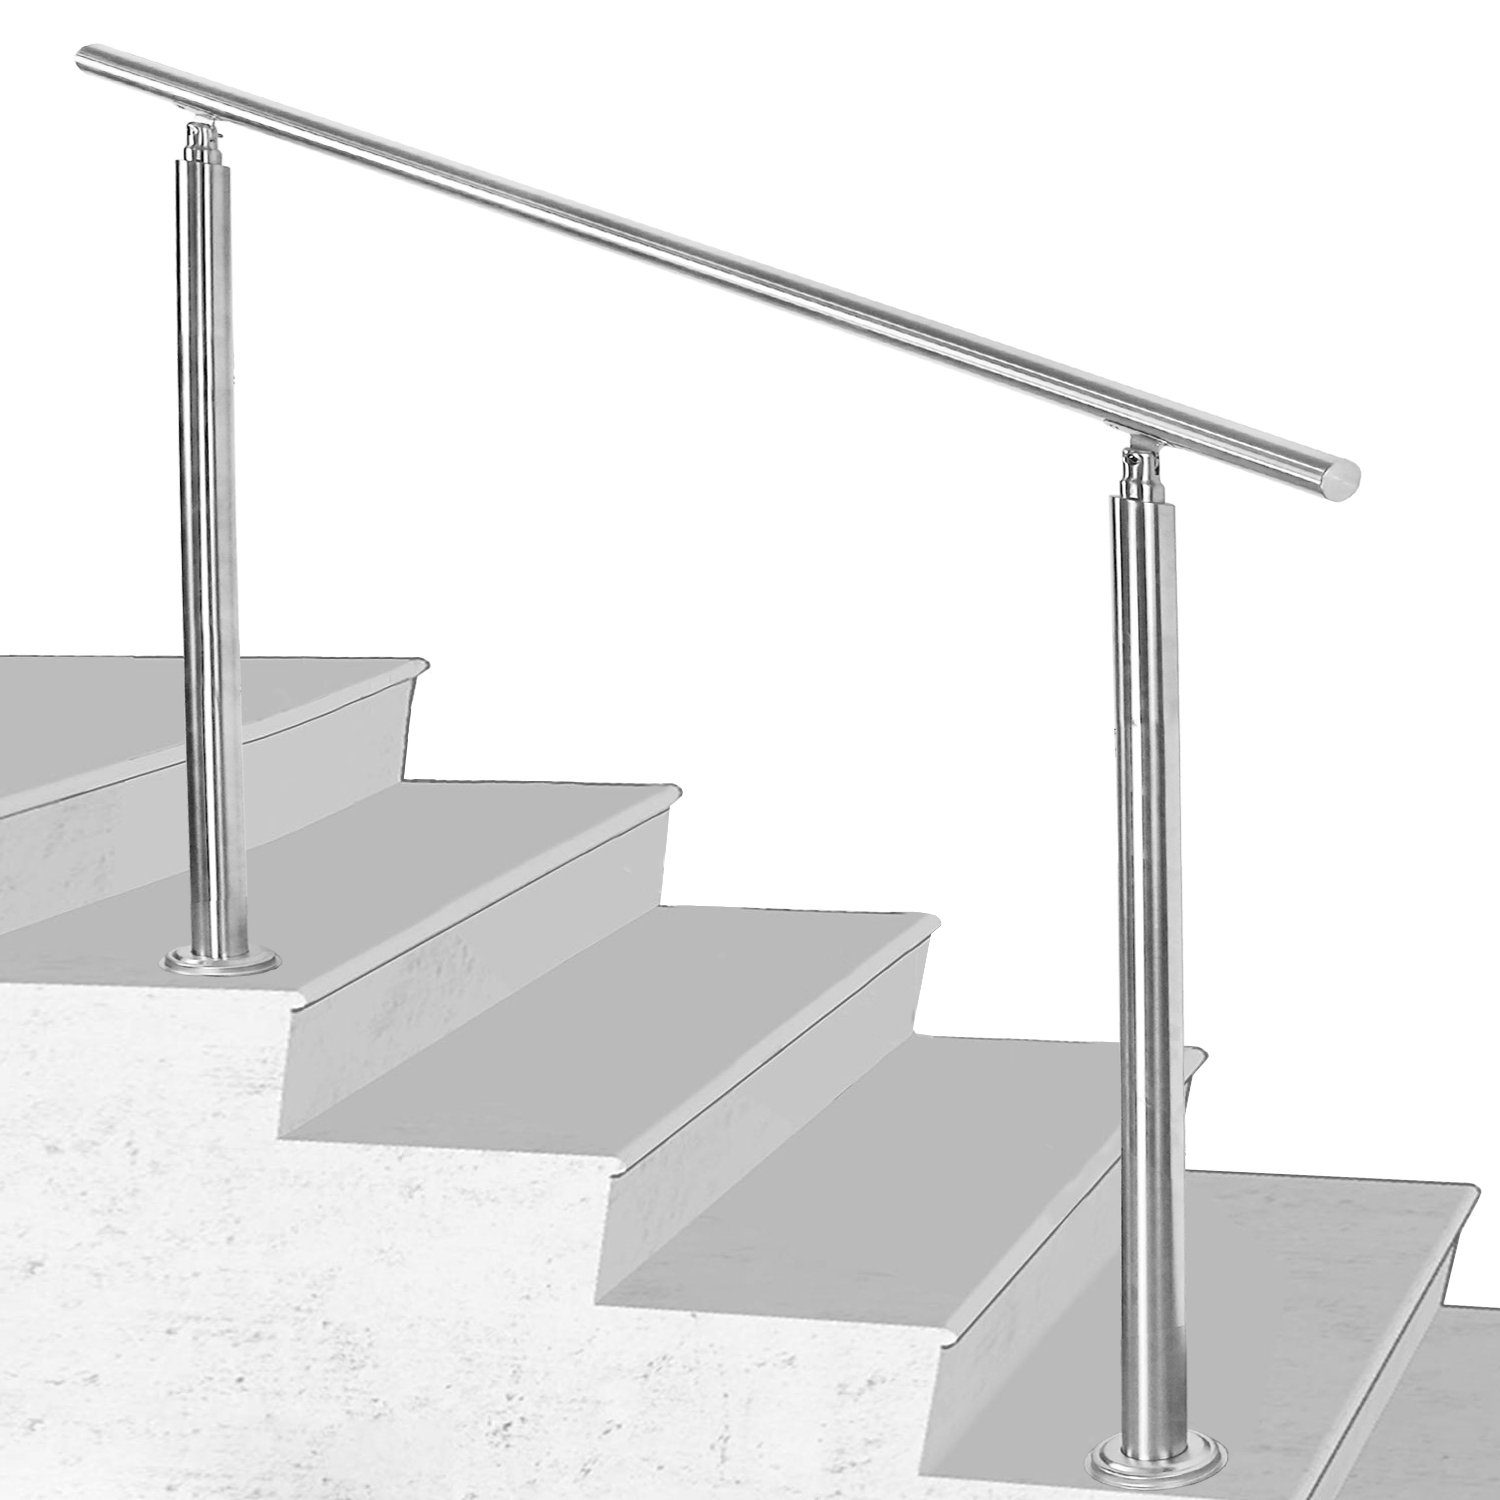 Randaco Treppengeländer Edelstahl Handlauf 80-180cm Geländer 0-5 Querstab  Bausatz Aufmontage, 80 cm Länge, mit 0 Pfosten, für Brüstung Balkon Garten